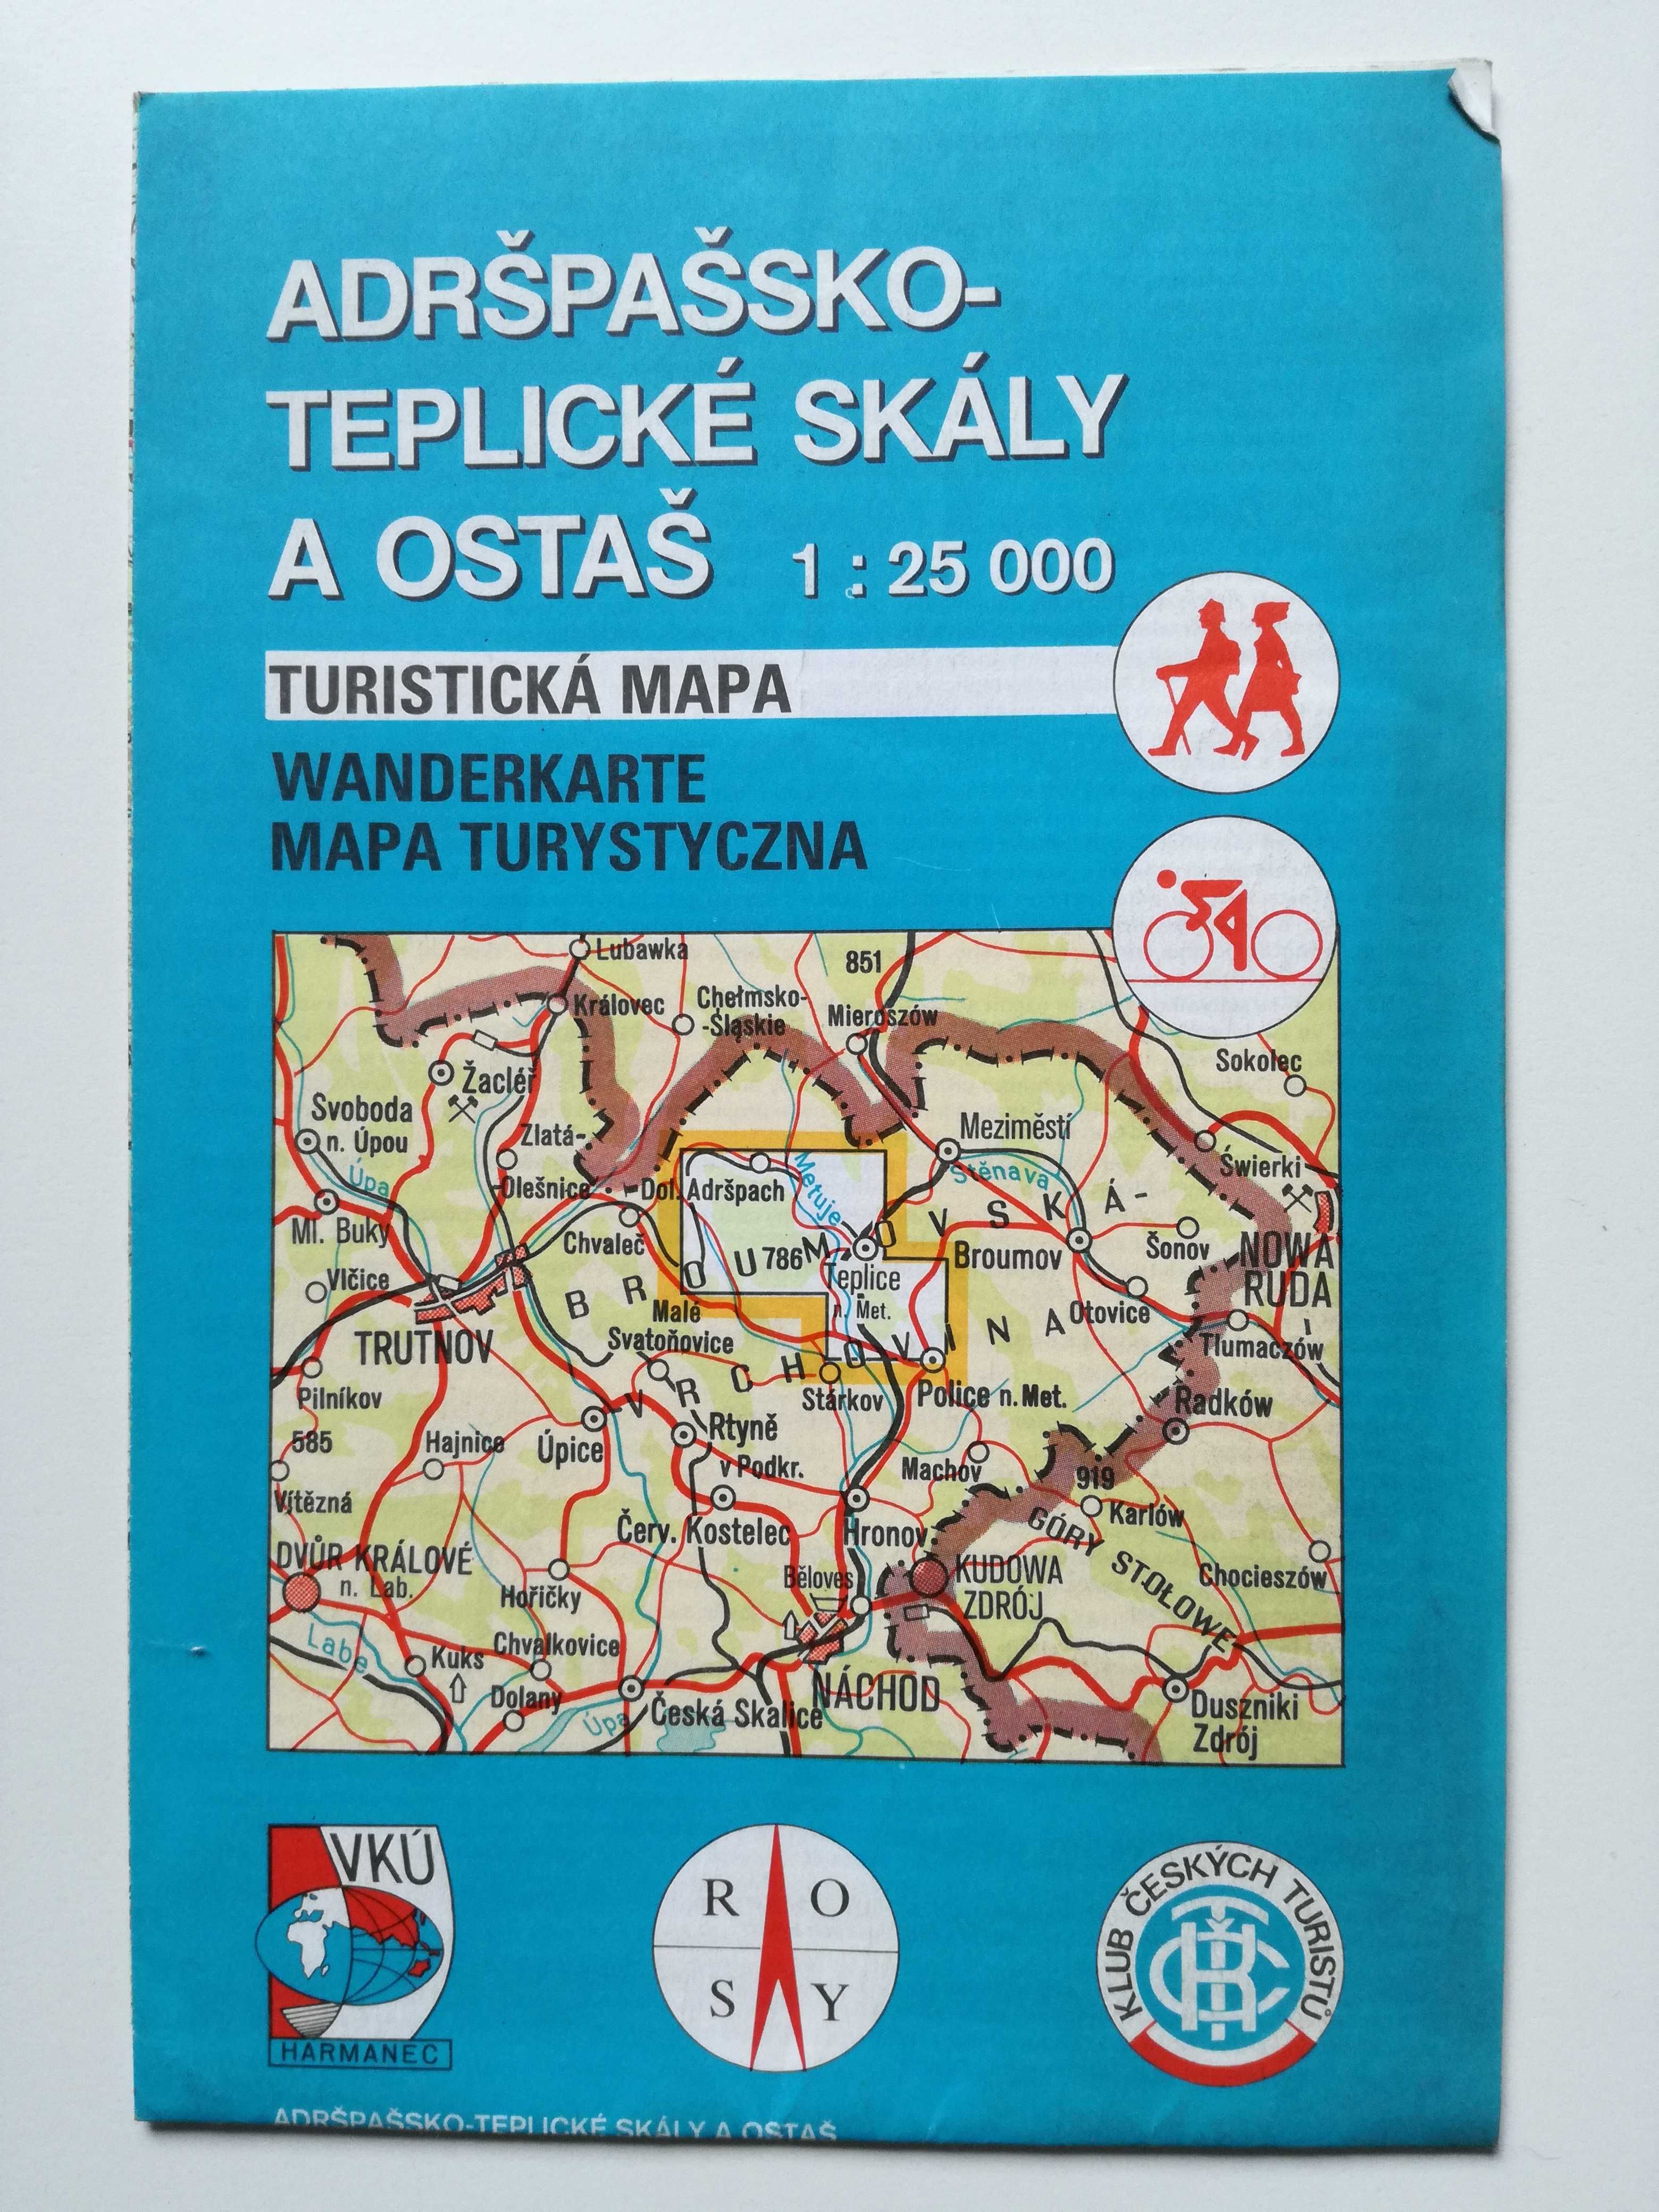 Adrspassko-Teplickie Skaly Sklane Miasto w Czechach mapa turyst.